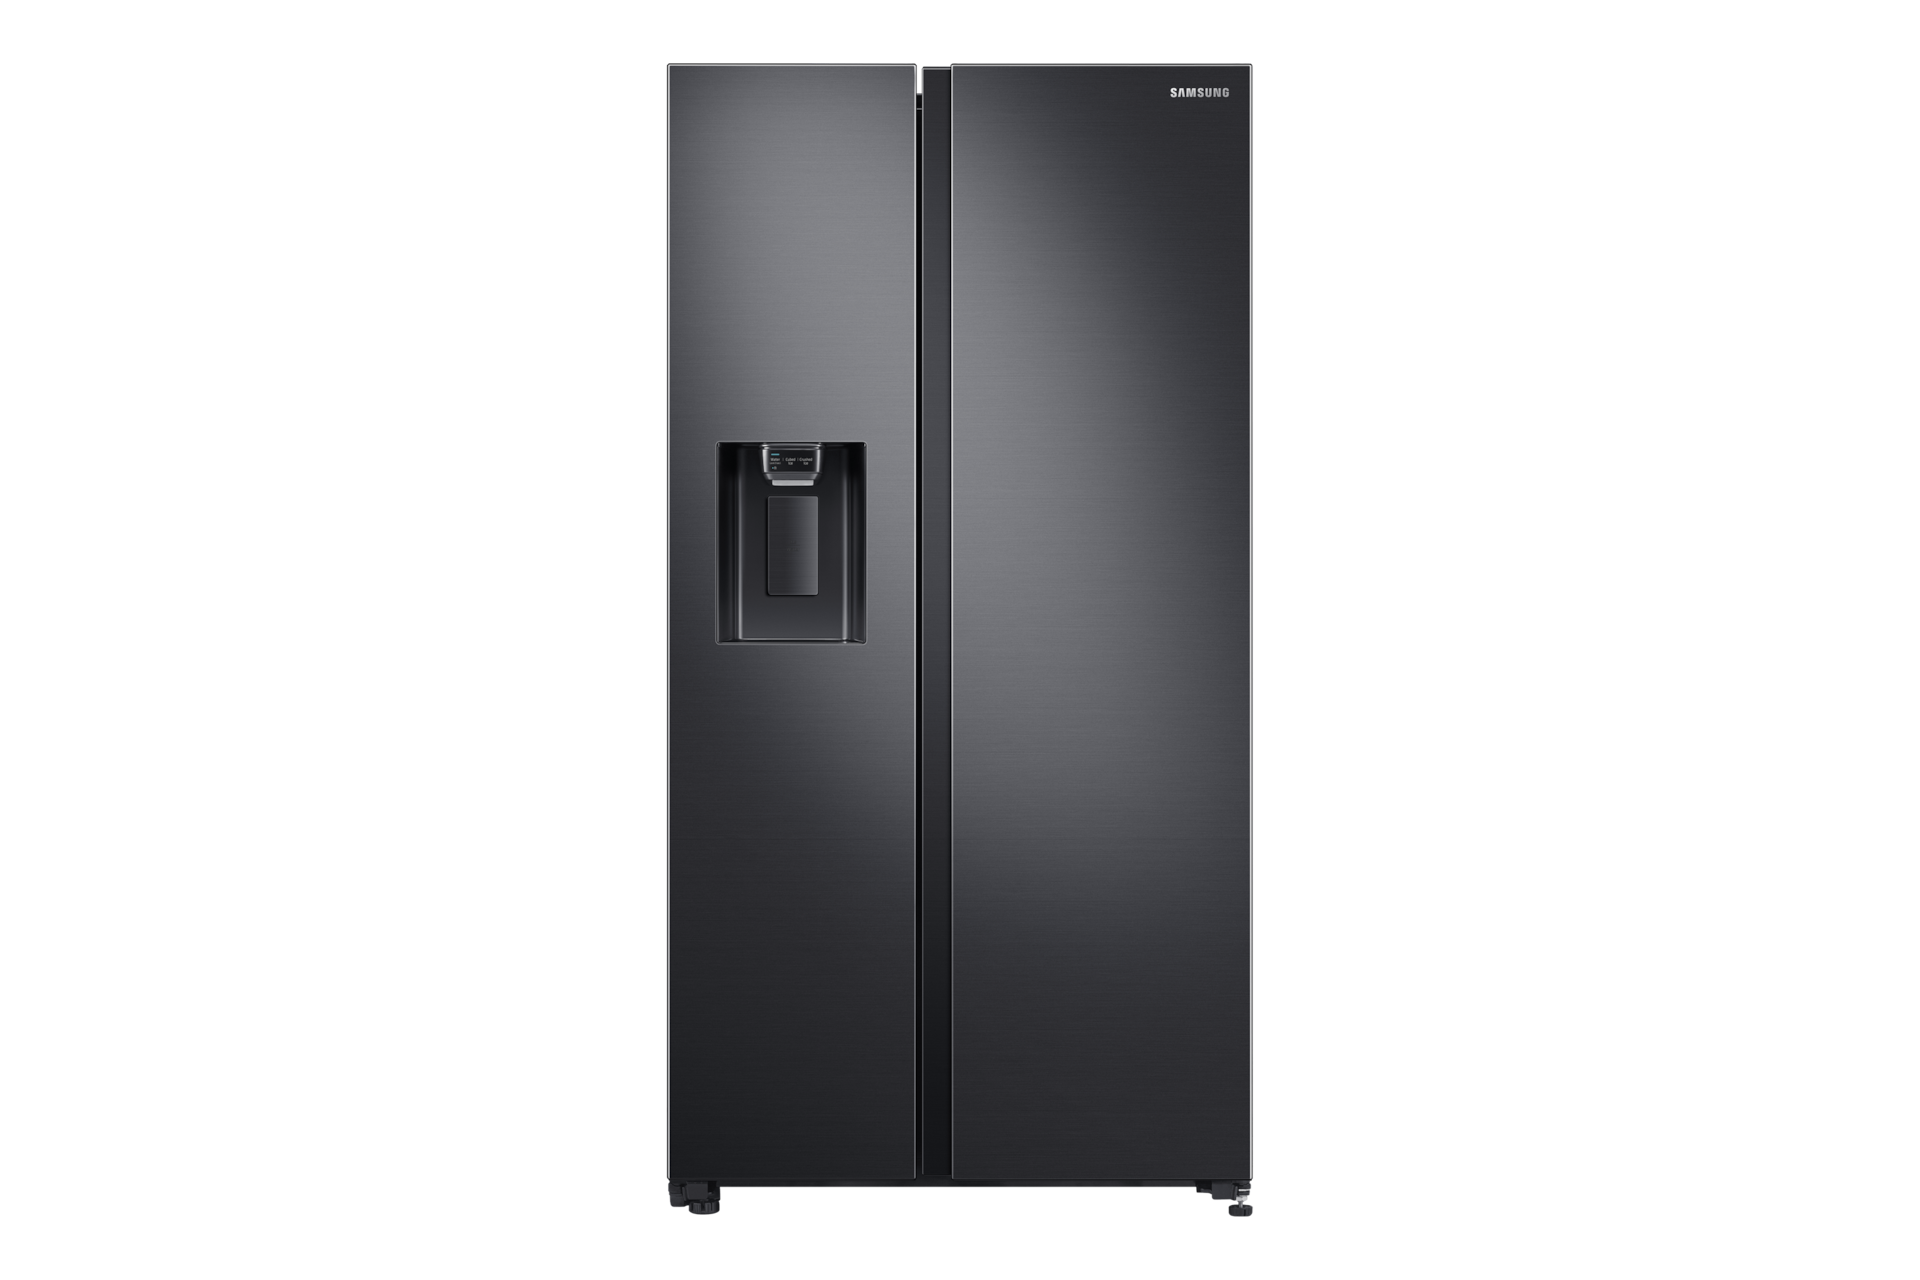 Mặt trước của Tủ lạnh Samsung Side By Side RS64R5301B4 660L (Đen) với thiết kế 2 cửa thời trang và ngăn lấy nước bên ngoài.